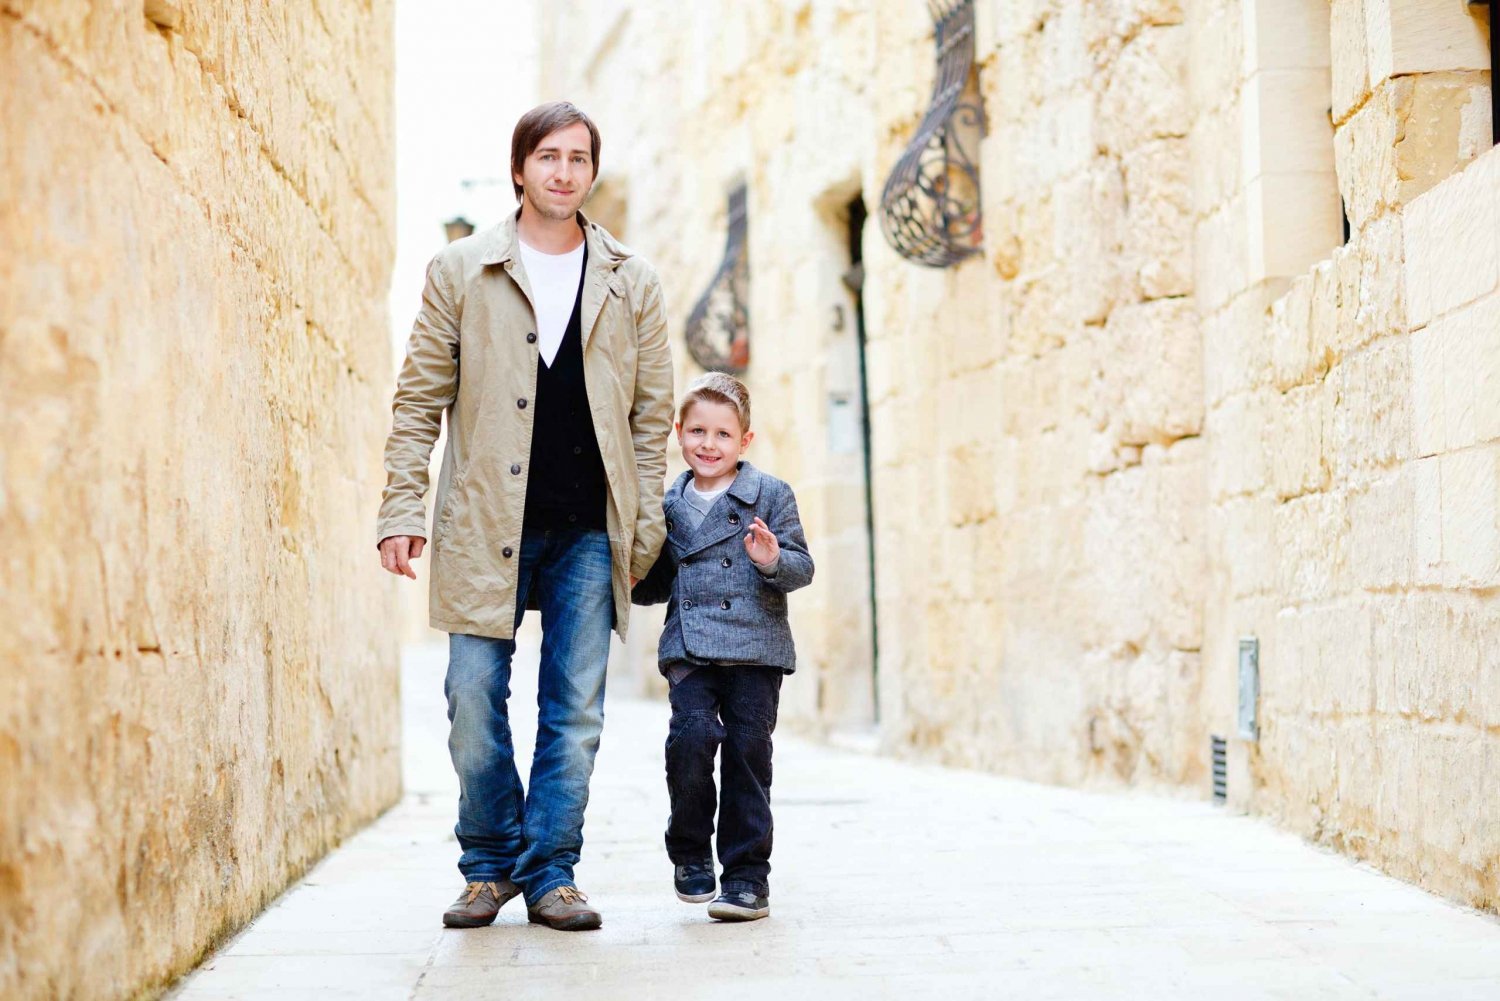 Valletta Familienabenteuer: Geschichte & Spaß Spaziergang